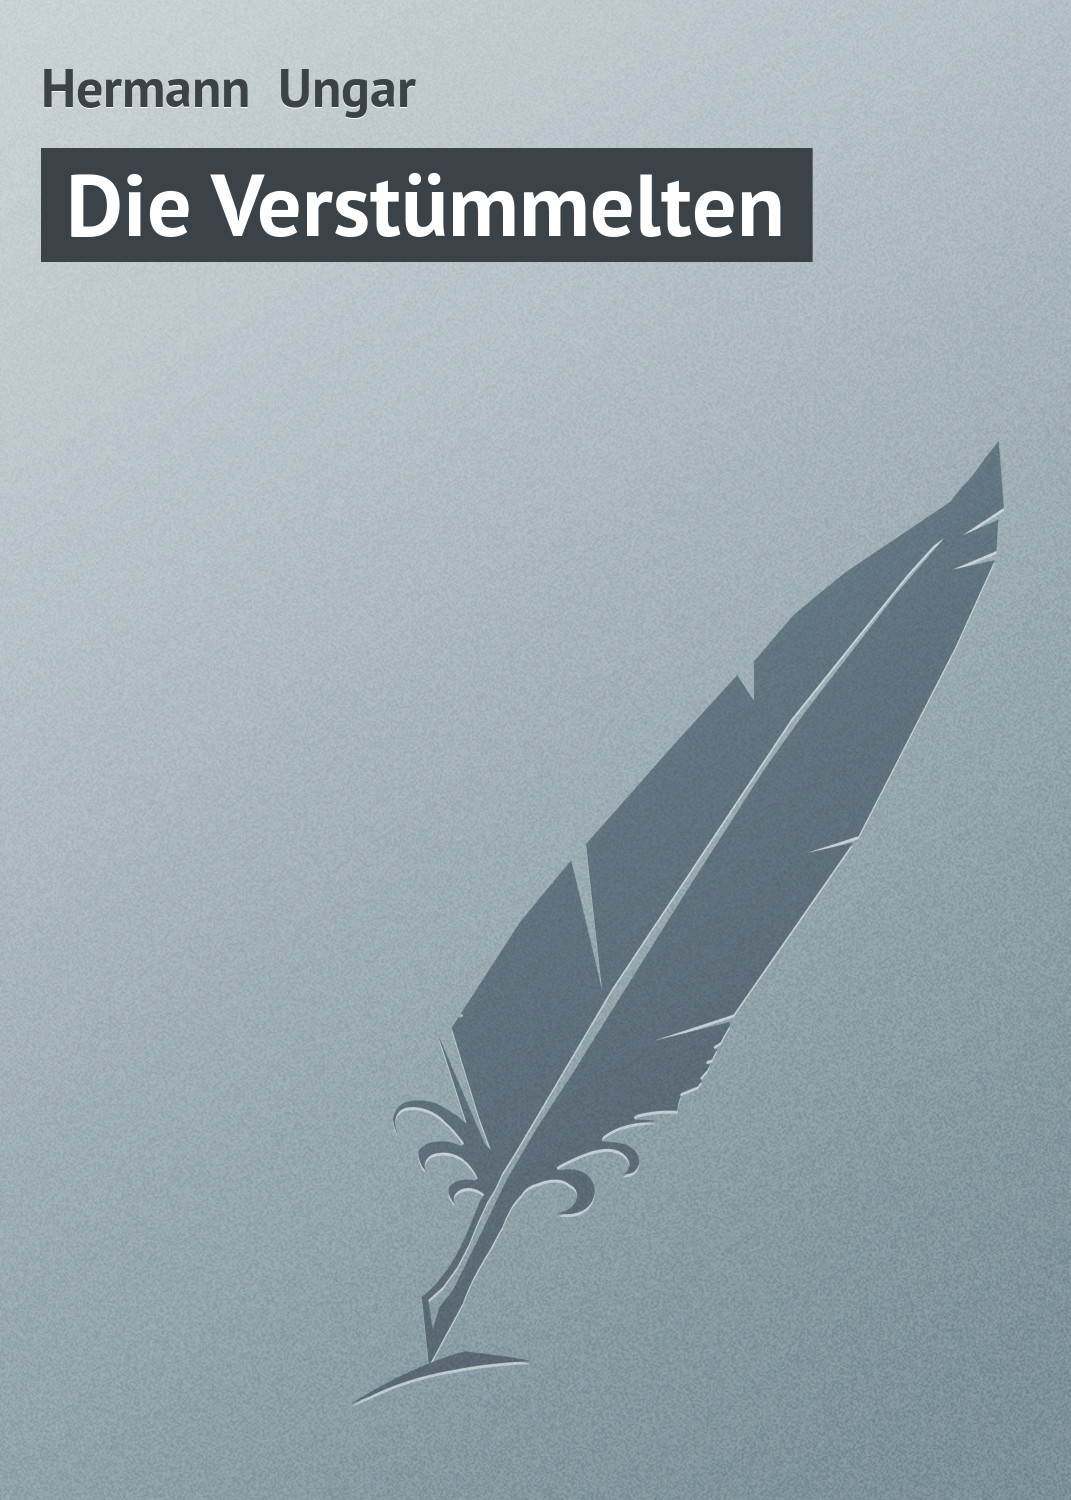 Книга Die Verstümmelten из серии , созданная Hermann Ungar, может относится к жанру Зарубежная старинная литература, Зарубежная классика. Стоимость электронной книги Die Verstümmelten с идентификатором 21106814 составляет 5.99 руб.